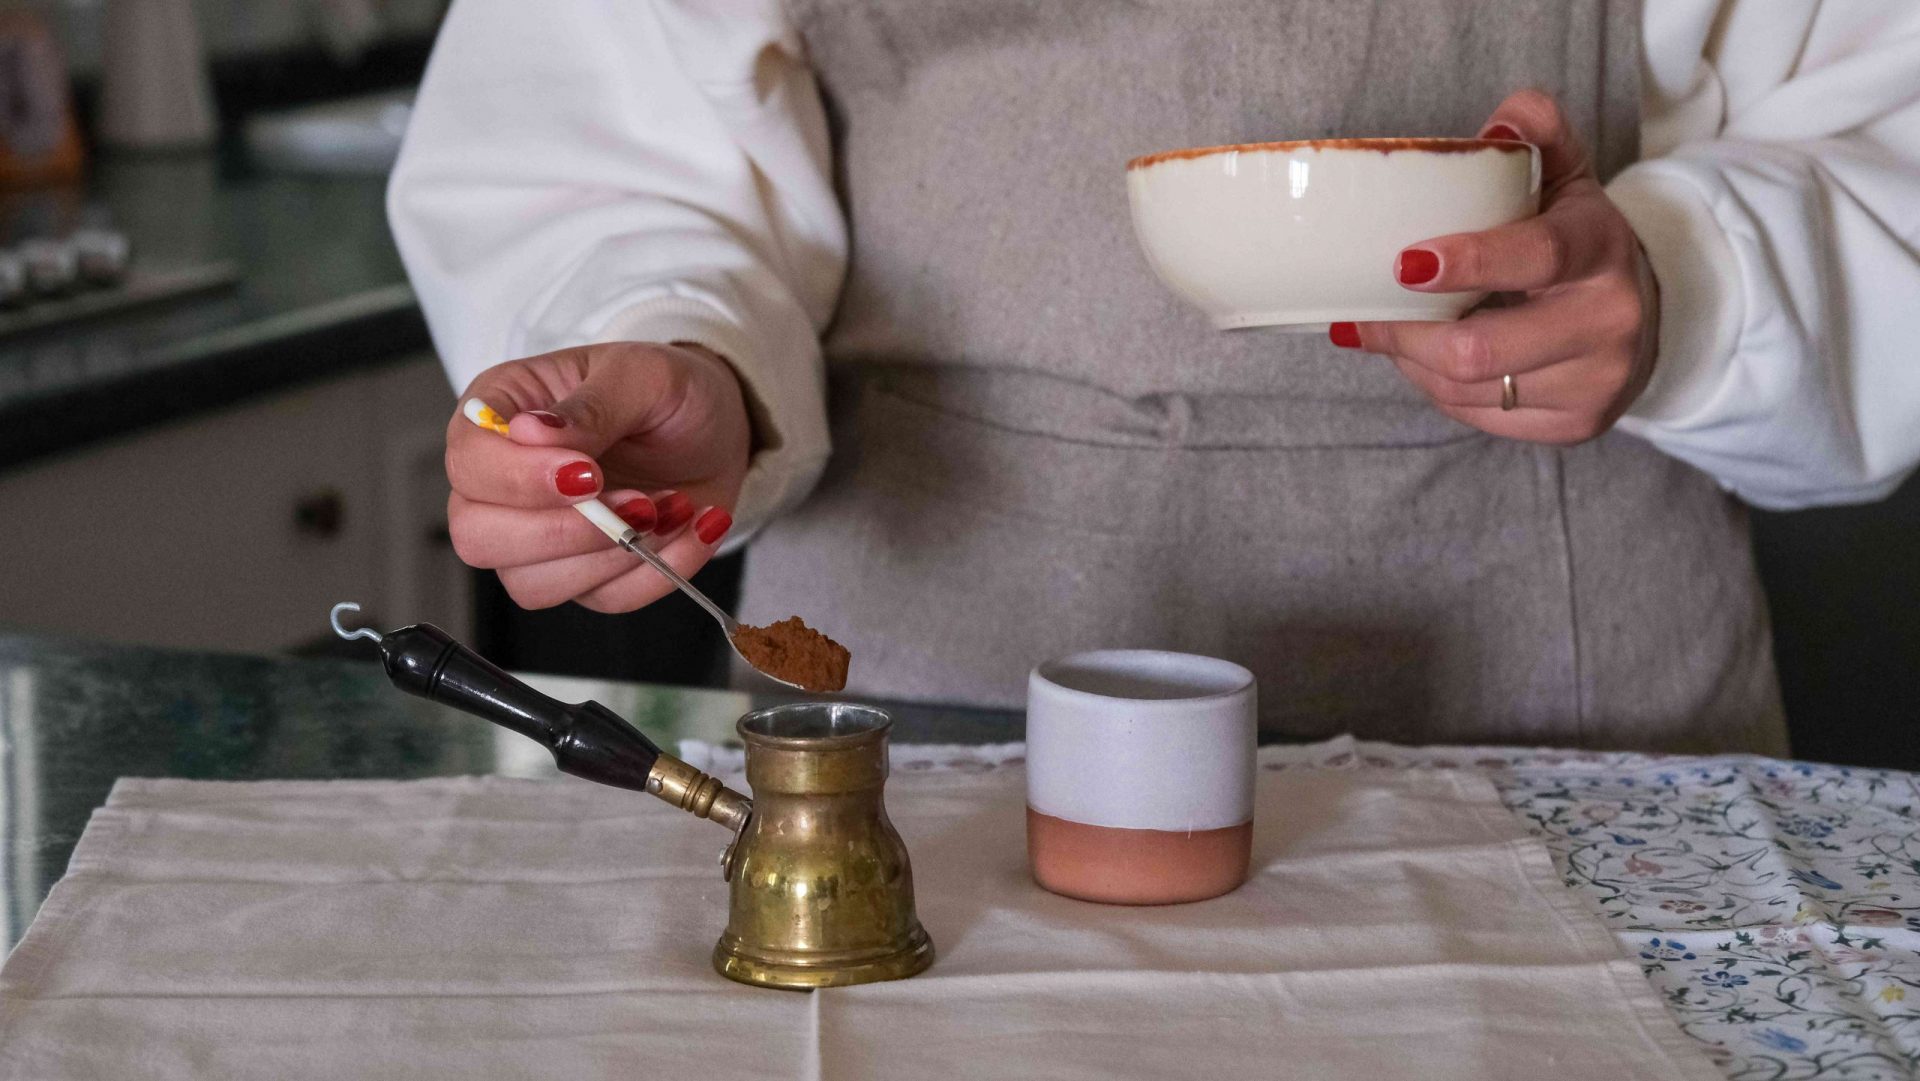 foto de cintura de una persona preparando café turco con una taza de cerámica y una cafetera turca de latón